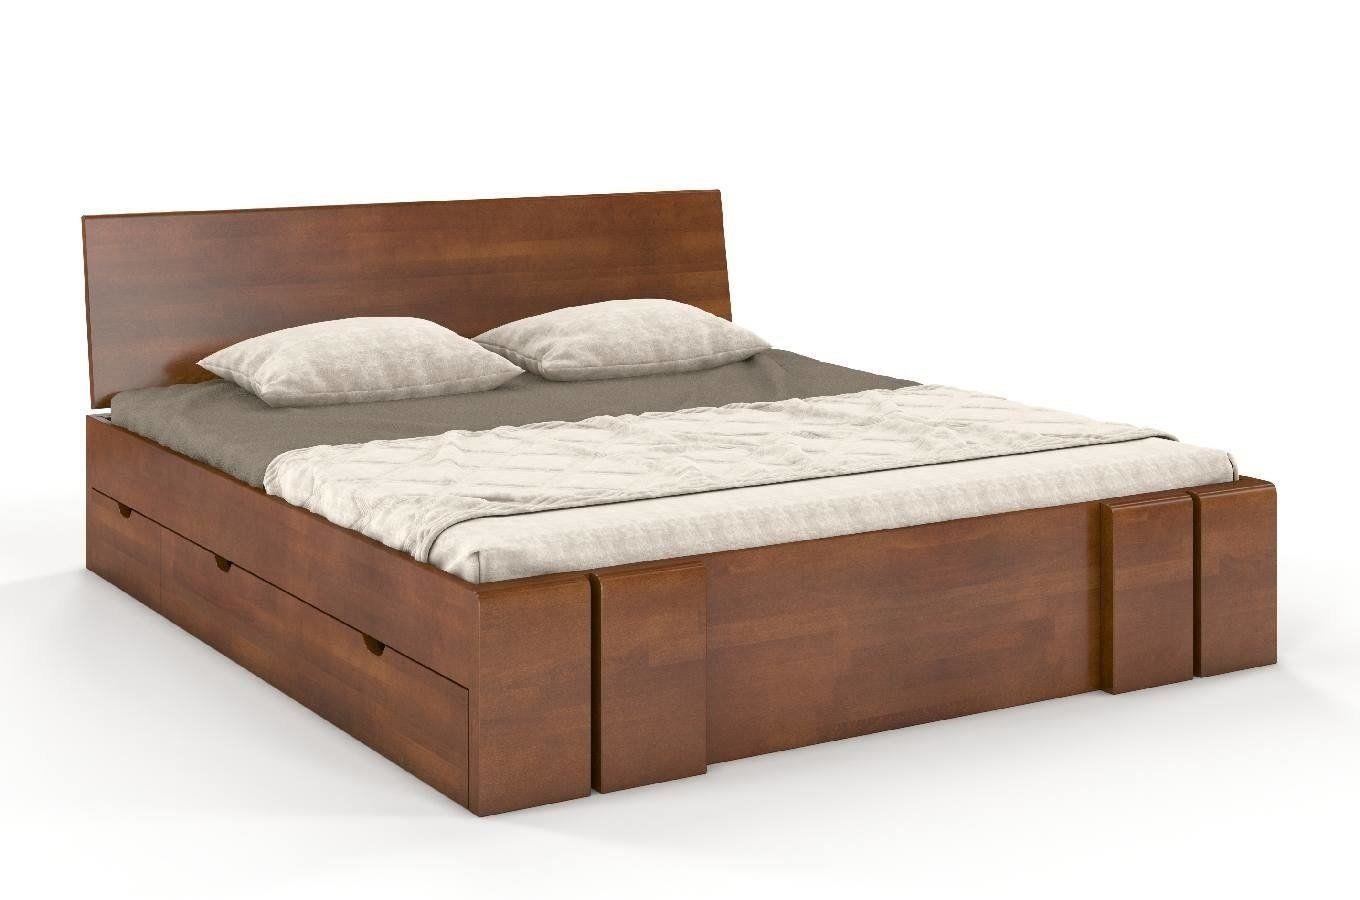 Łóżko drewniane bukowe z szufladami Skandica VESTRE Maxi & DR / 160x200 cm, kolor orzech